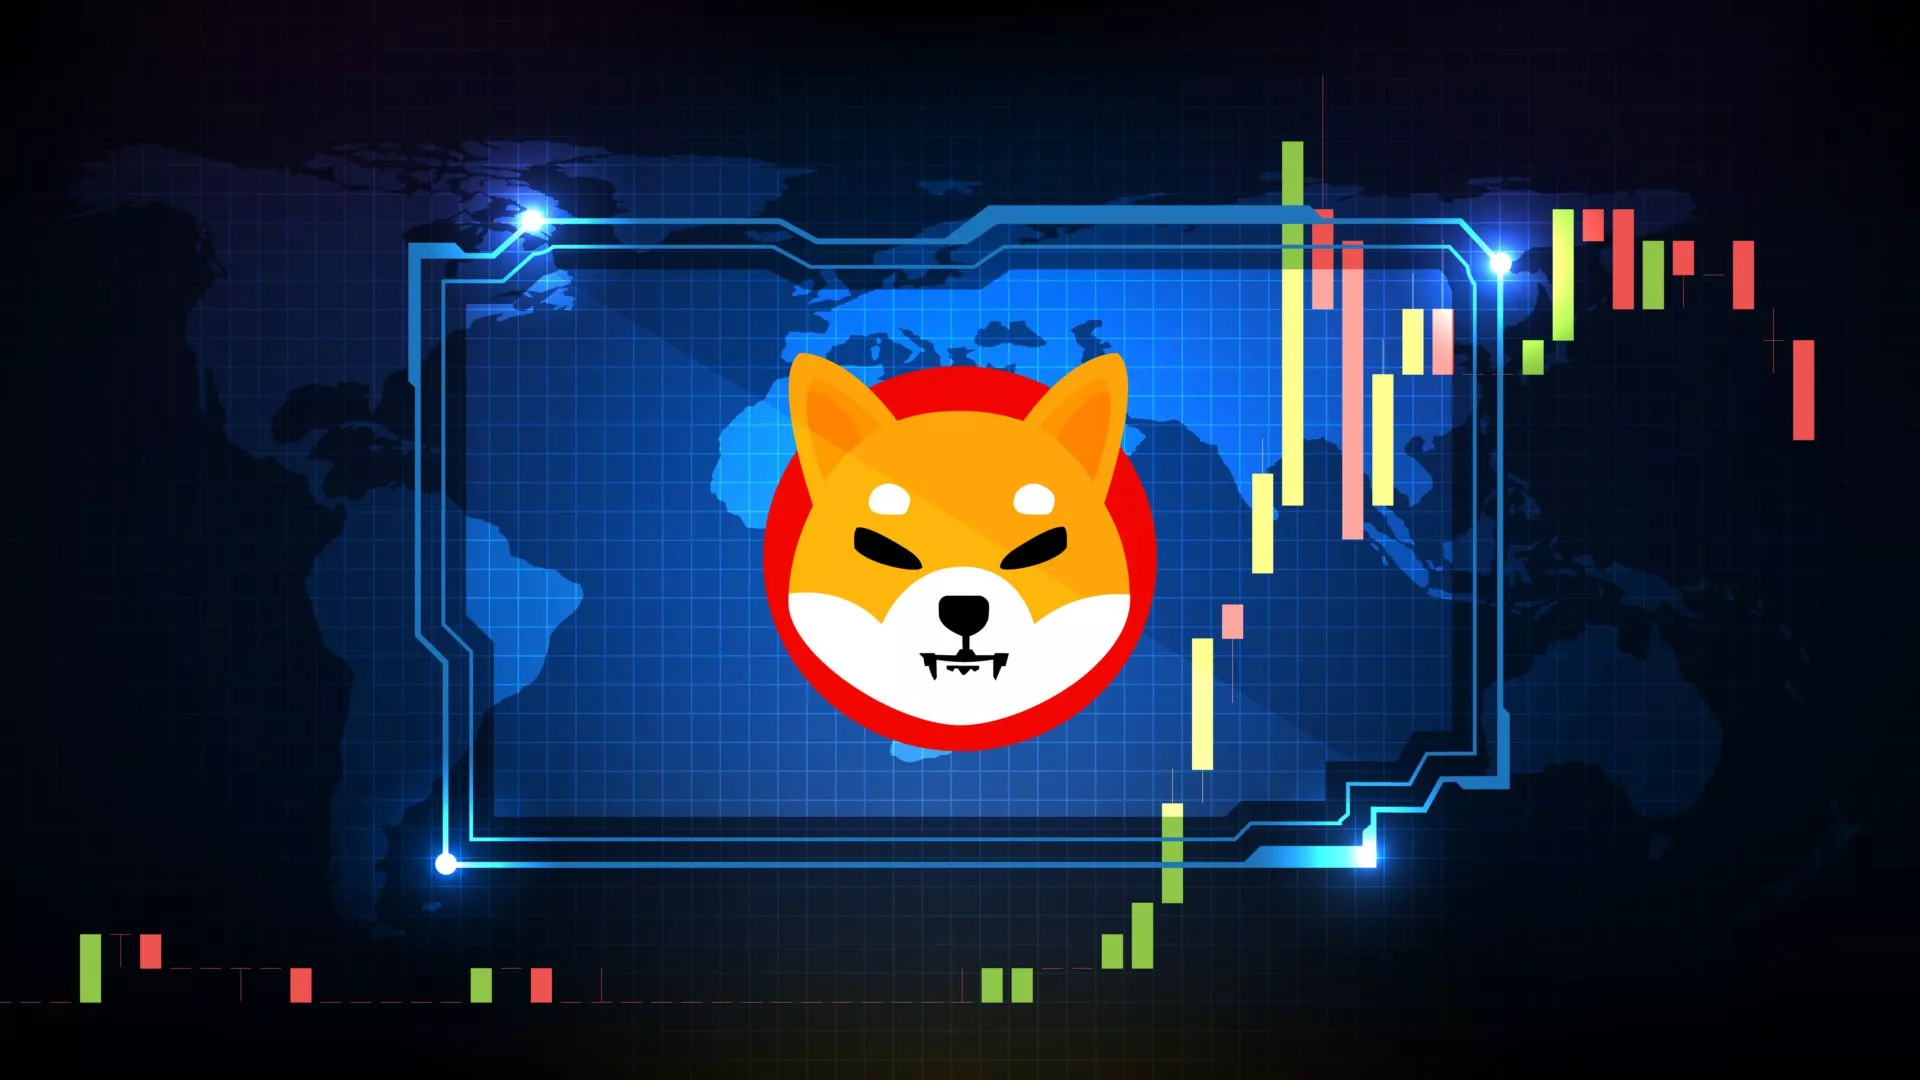 Shiba Inu was de meest populaire crypto op CoinMarketCap in 2021